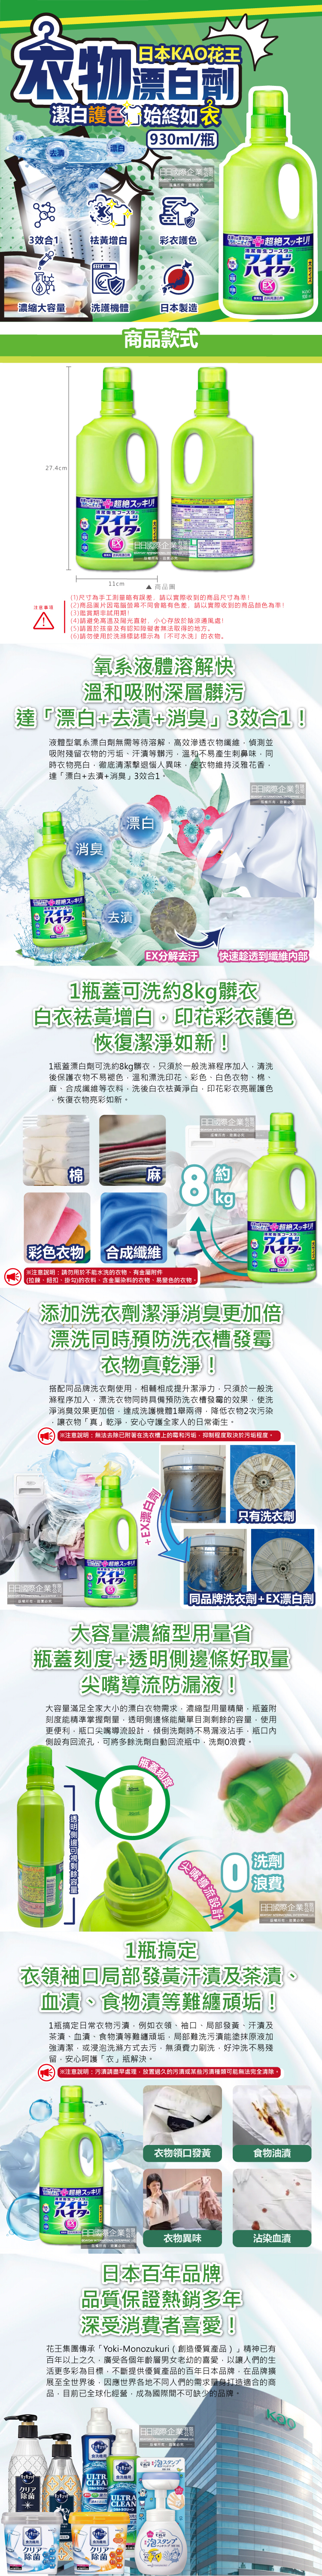 (清潔-衣物)日本KAO花王-彩色衣物EX漂白劑930ml大瓶裝介紹圖